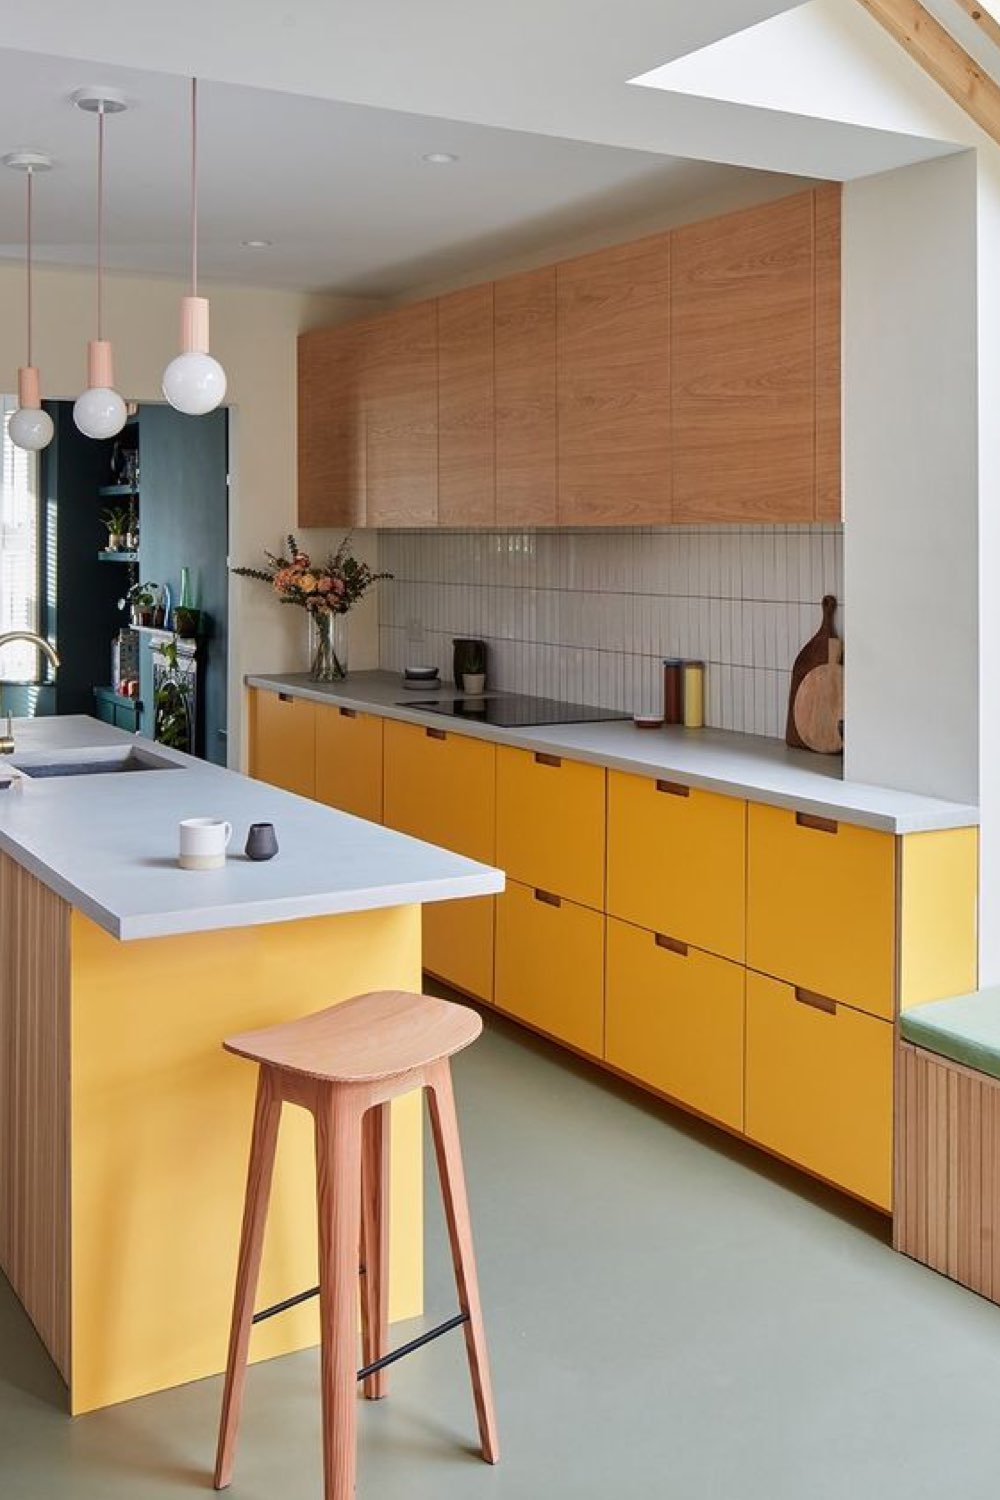 caracteristique decoration modern design cuisine en linéaire meuble bas couleur jaune meuble muraux bois îlot central crédence carrelage blanc